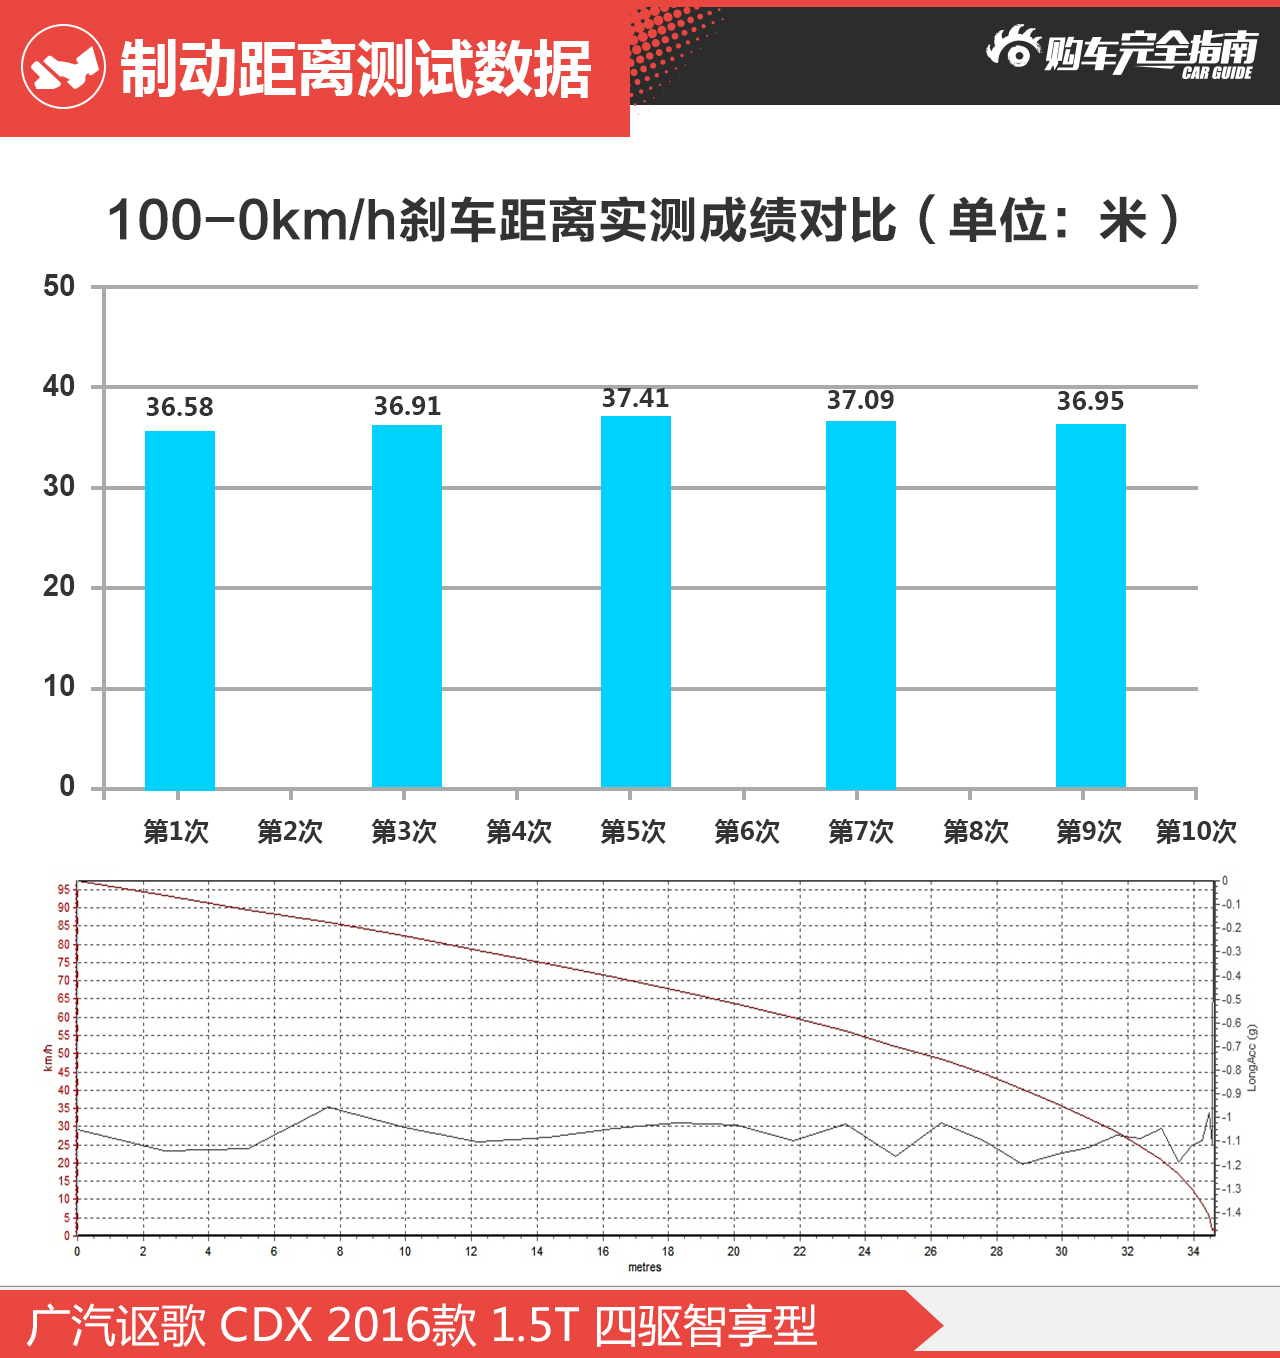 广汽讴歌 CDX 2016款 1.5T 四驱智享型